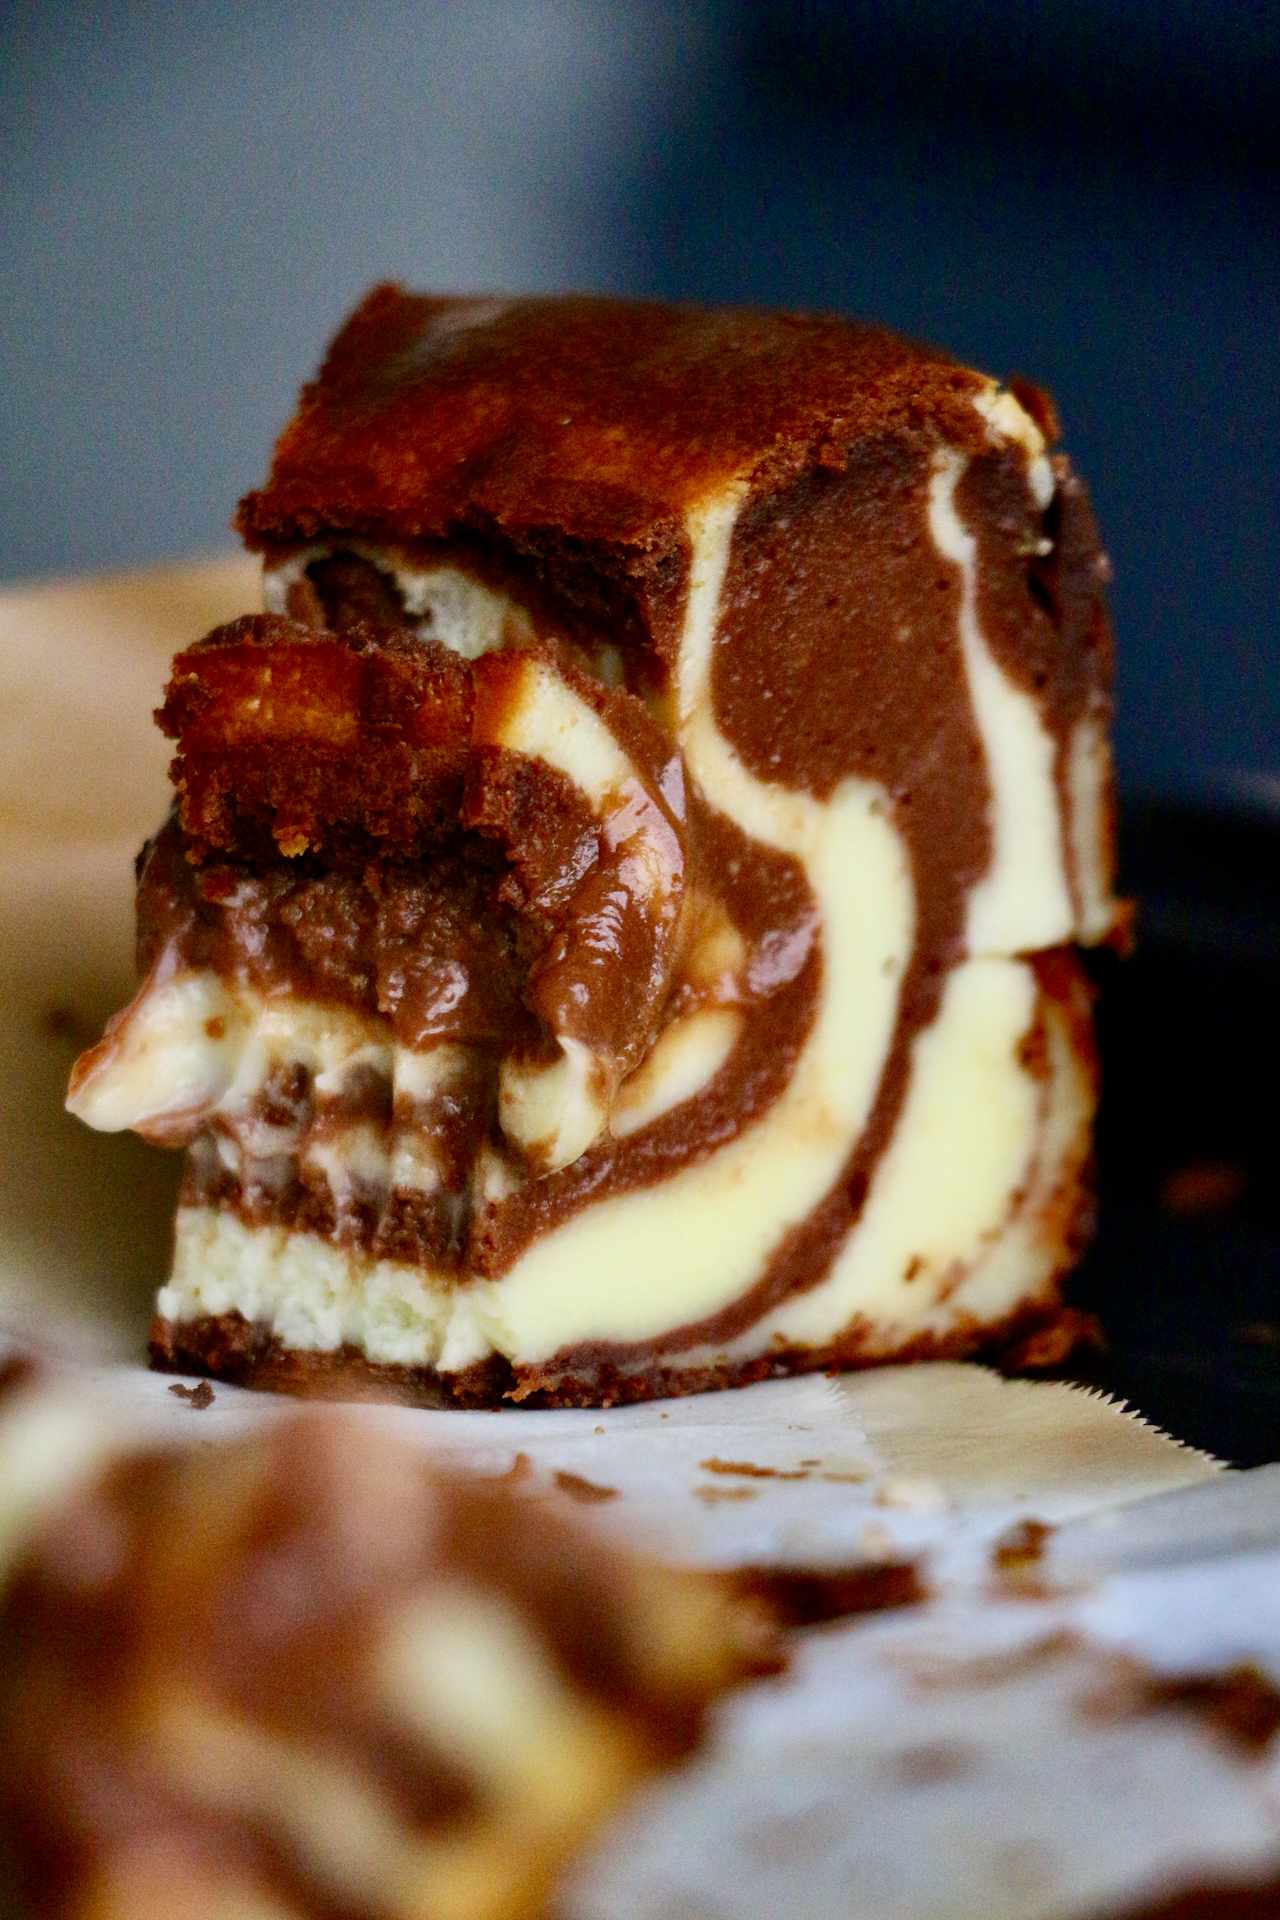 Belgian Dark Chocolate Marbled Basque Burnt Cheesecake | Baking Kit | makes 1x 7" cake